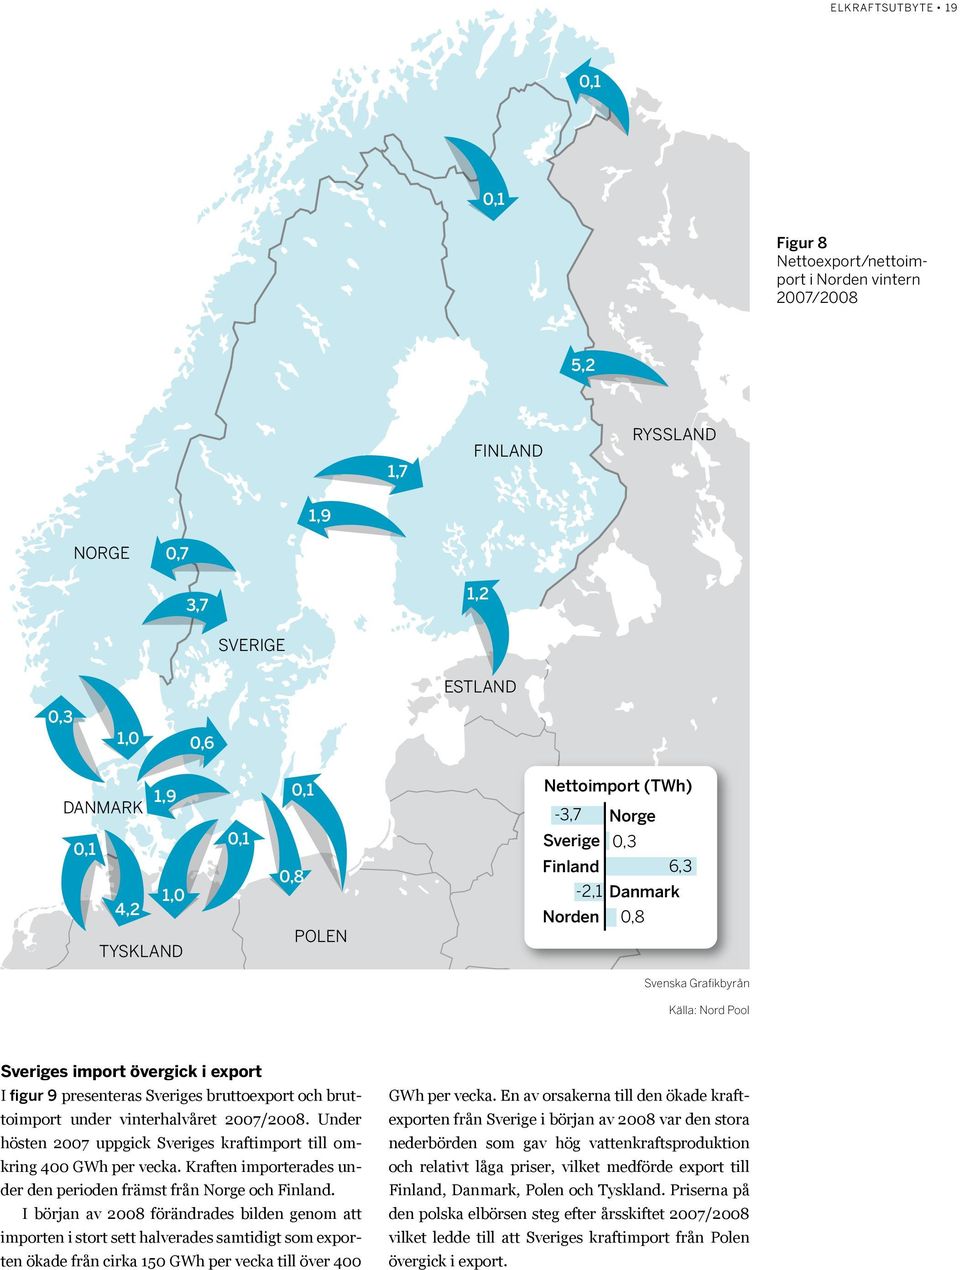 vinterhalvåret 27/28. Under hösten 27 uppgick Sveriges kraftimport till omkring 4 GWh per vecka. Kraften importerades under den perioden främst från Norge och Finland.